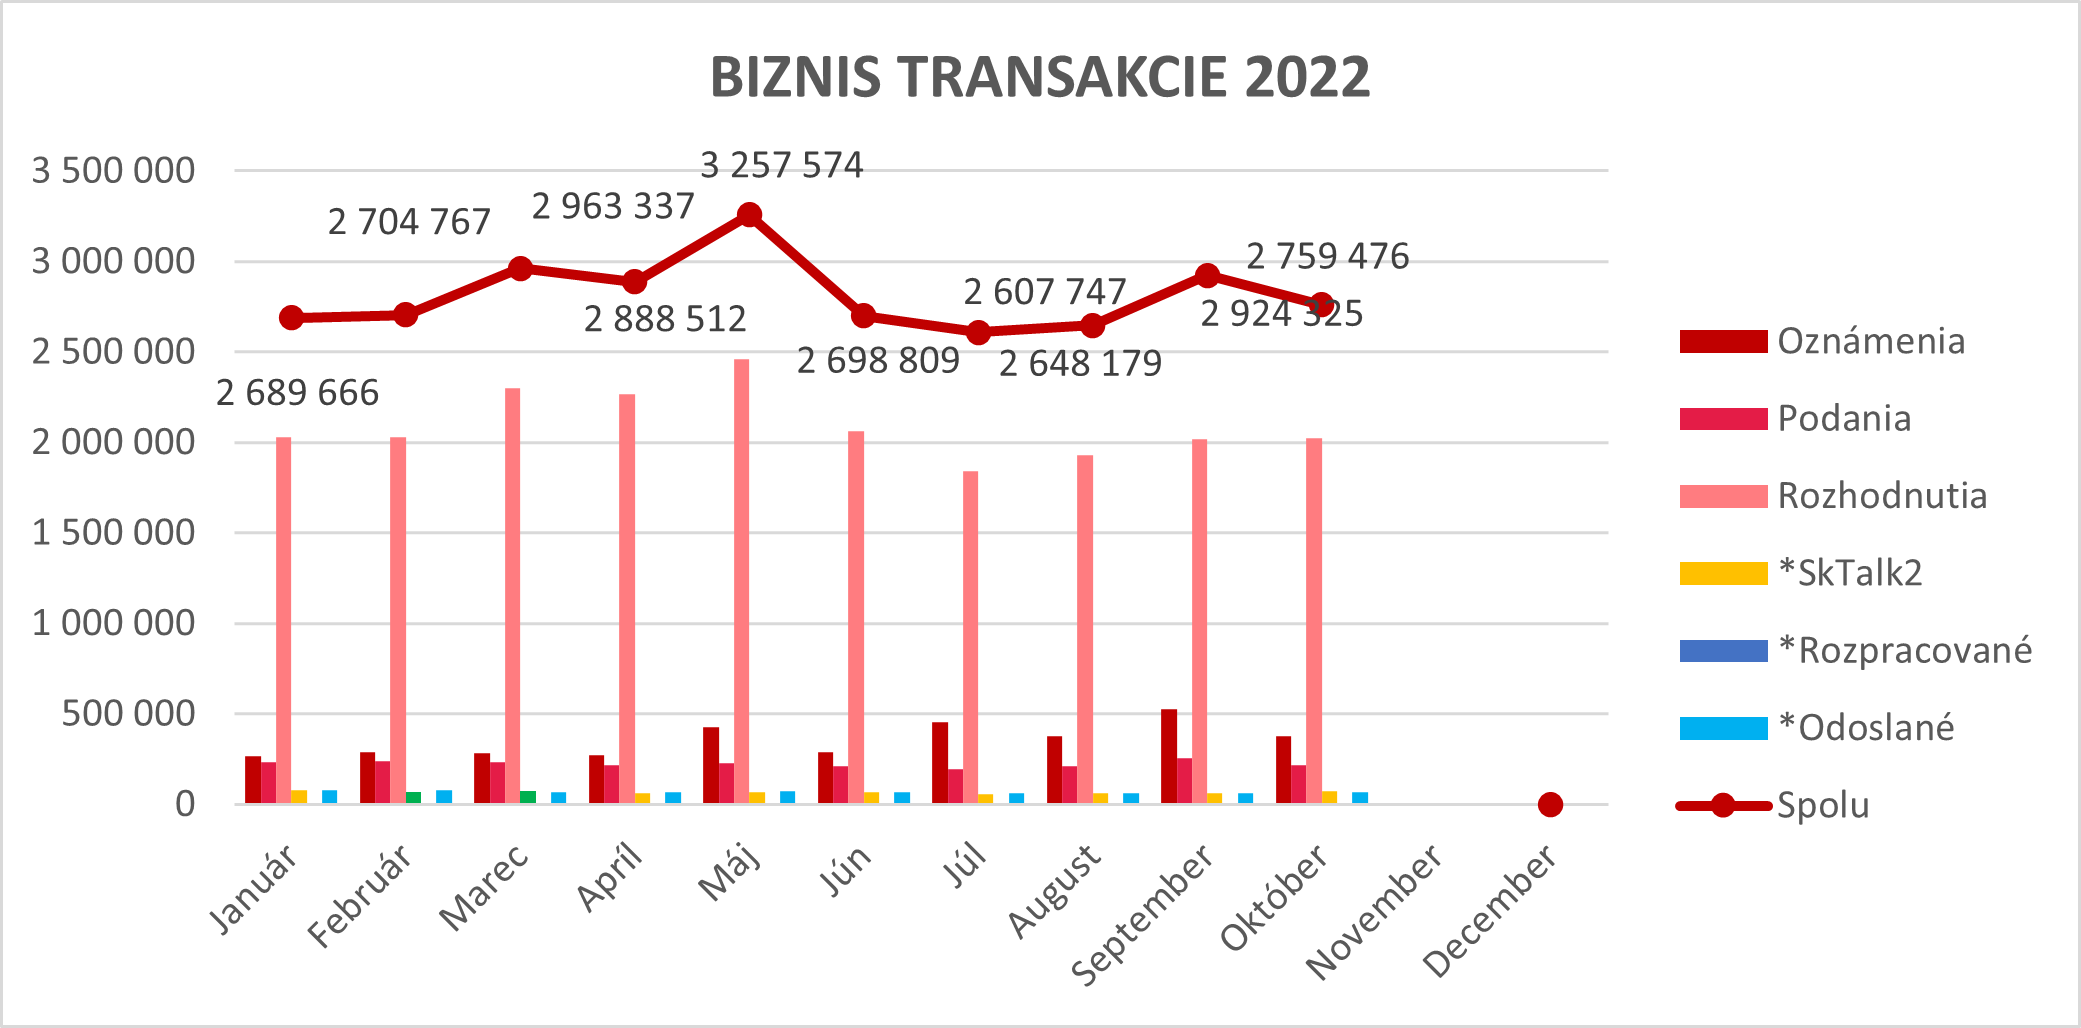 Ilustračný graf biznis transakcií za rok 2022.